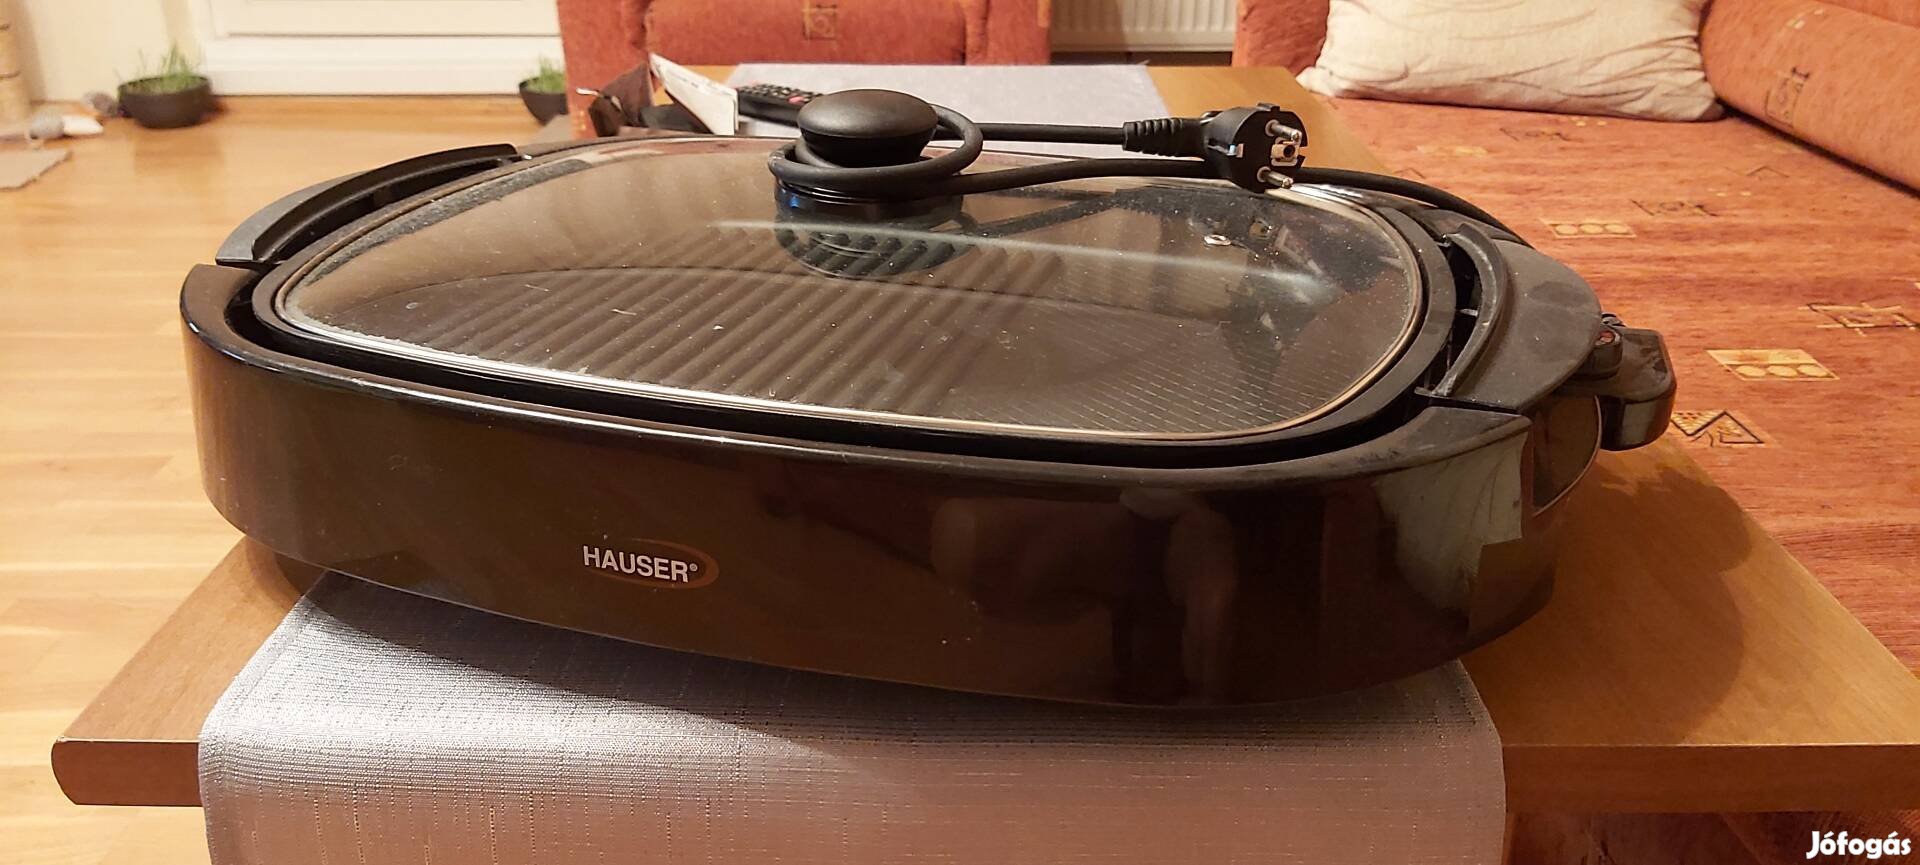 Új Hauser markájú asztali grillsütő eladó!